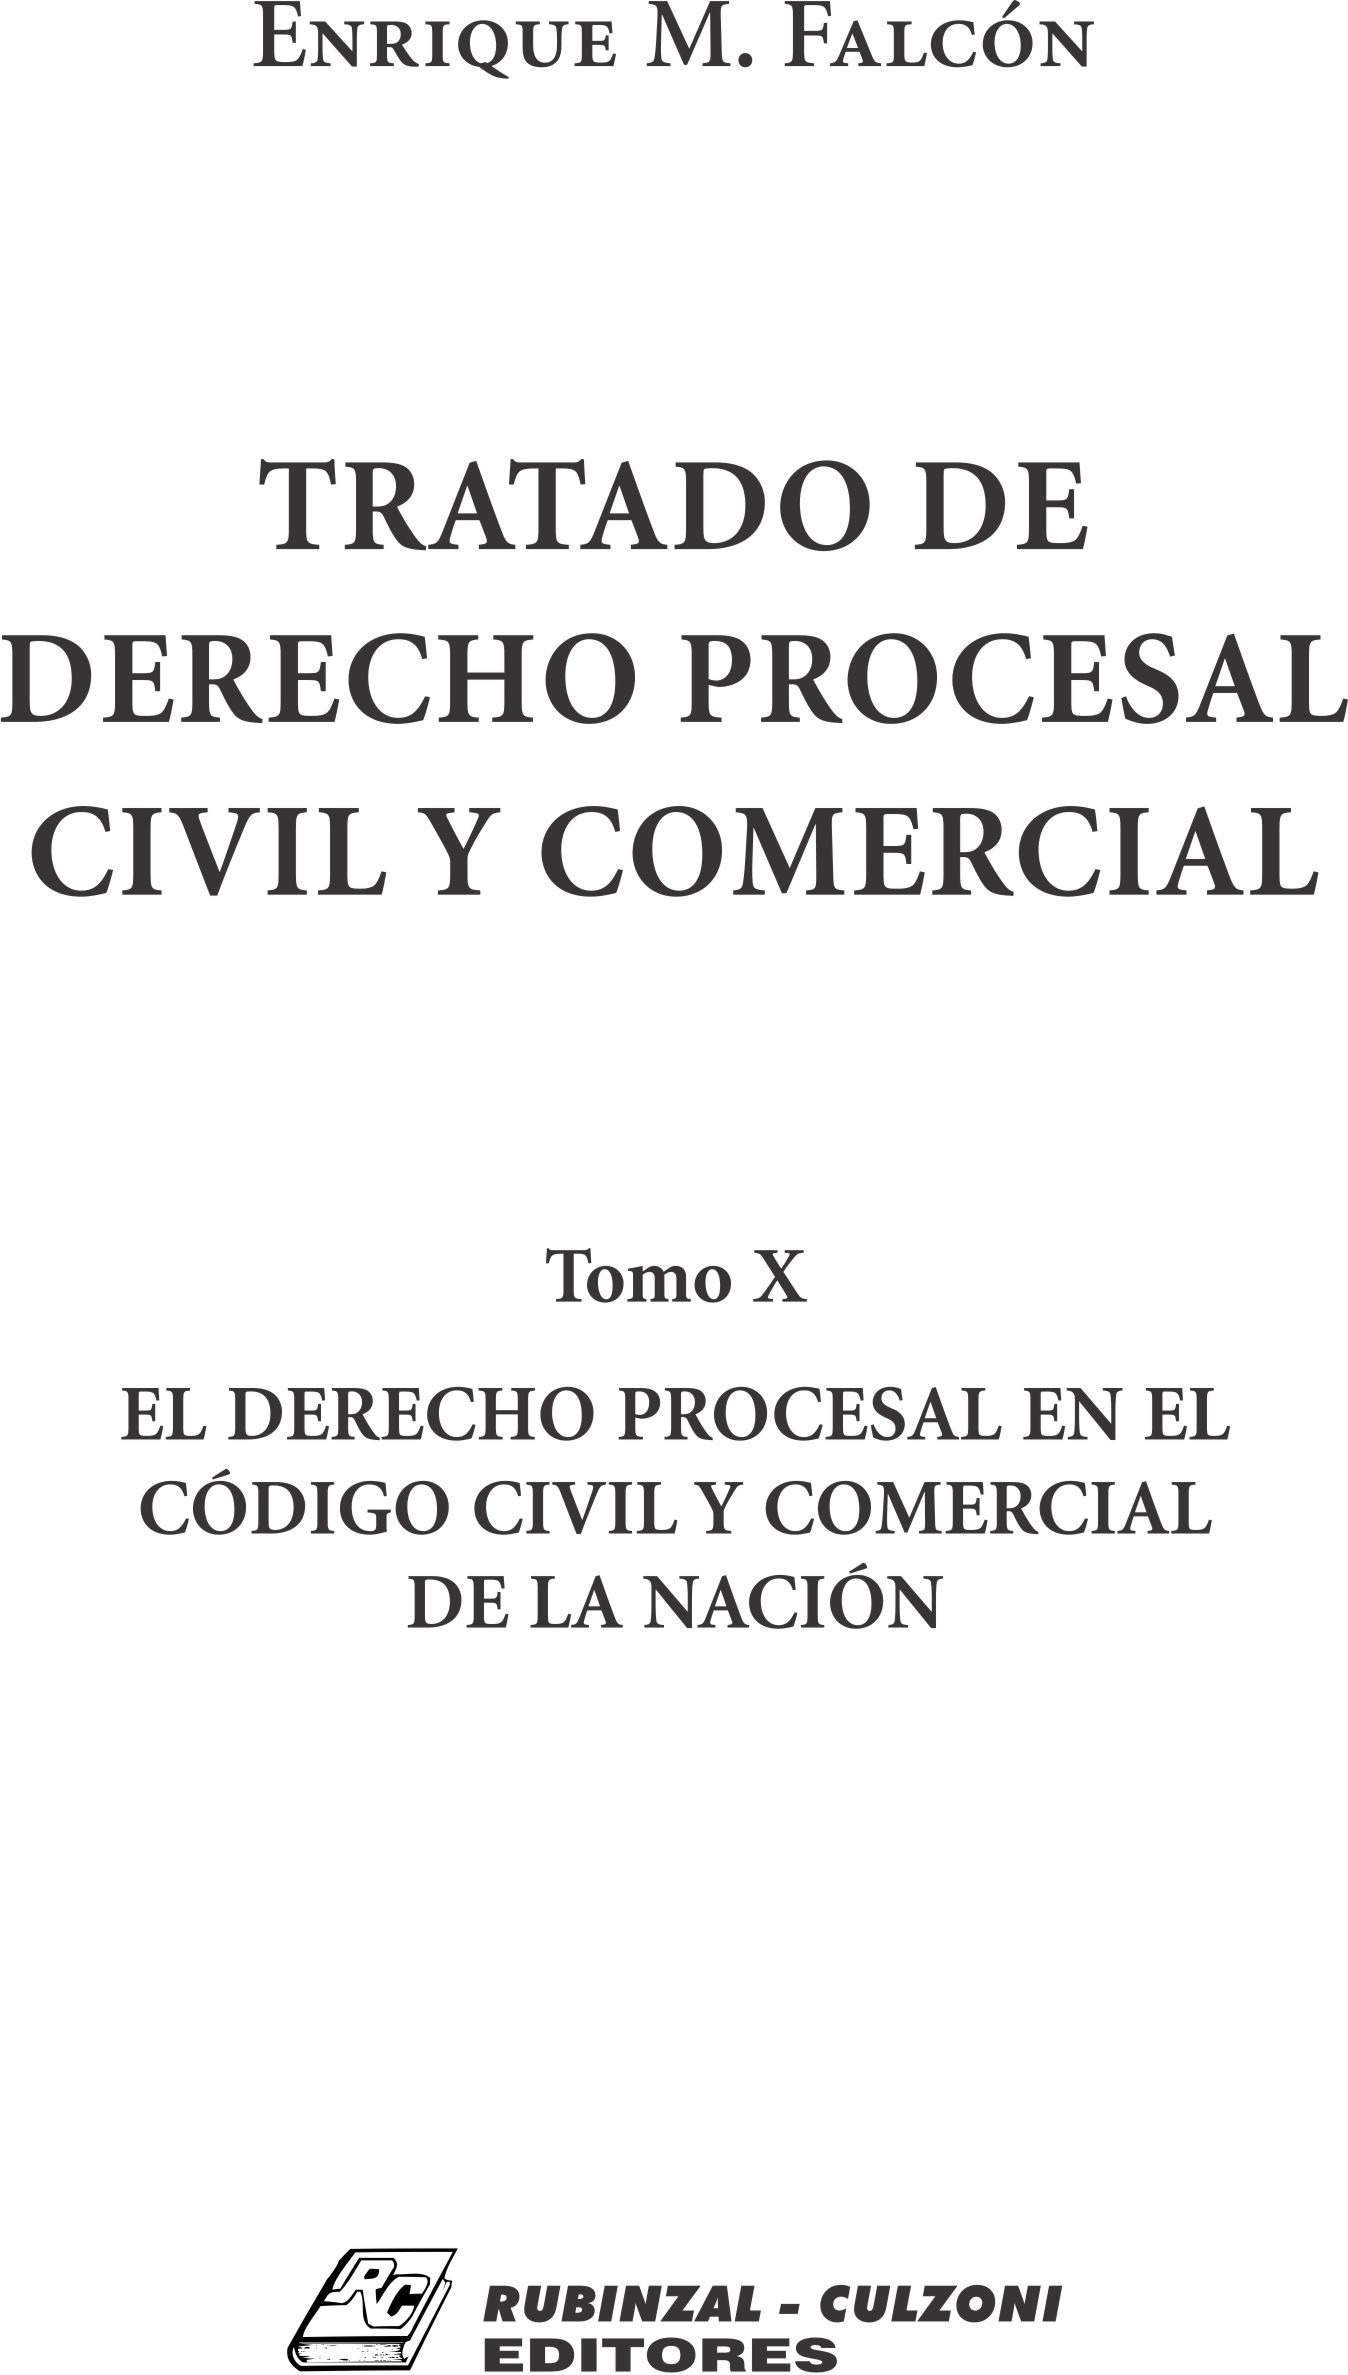 Tratado de Derecho Procesal Civil y Comercial. - Tomo X. El Derecho Procesal en el Código Civil y Comercial de la Nación